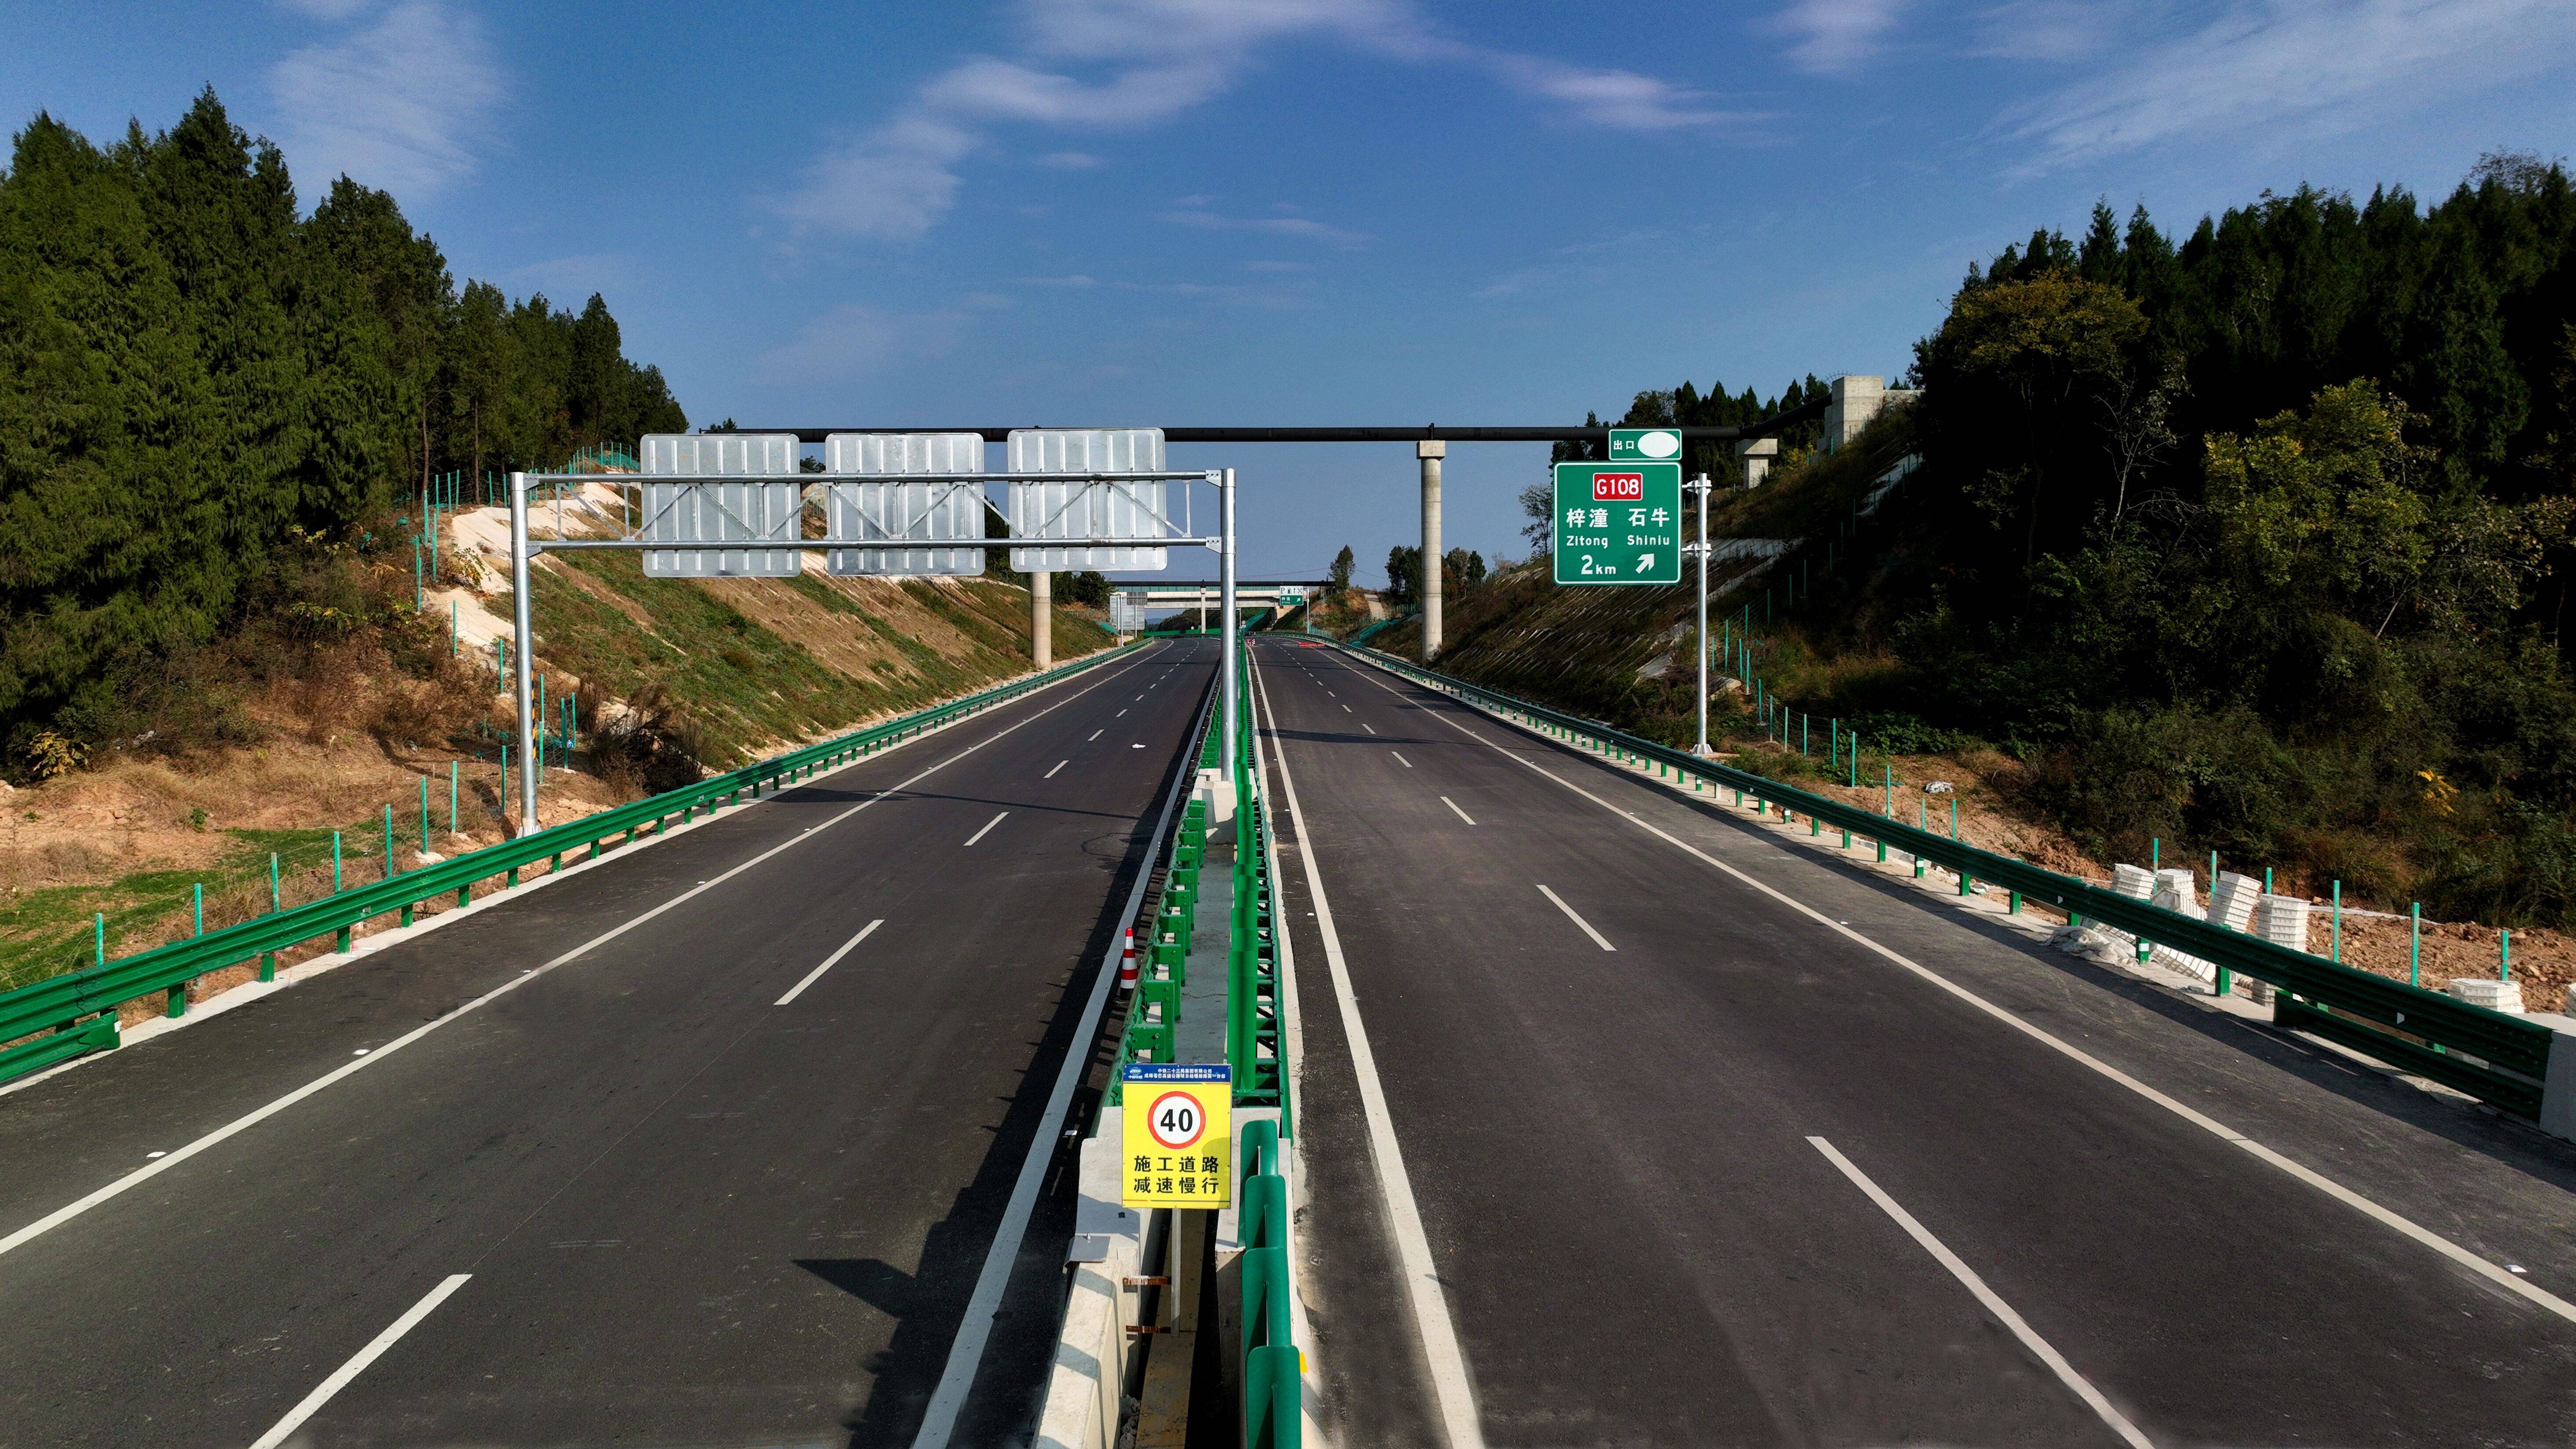 据悉,绵苍高速公路是梓潼县首条高速公路,也是梓潼县深入实施交通强县